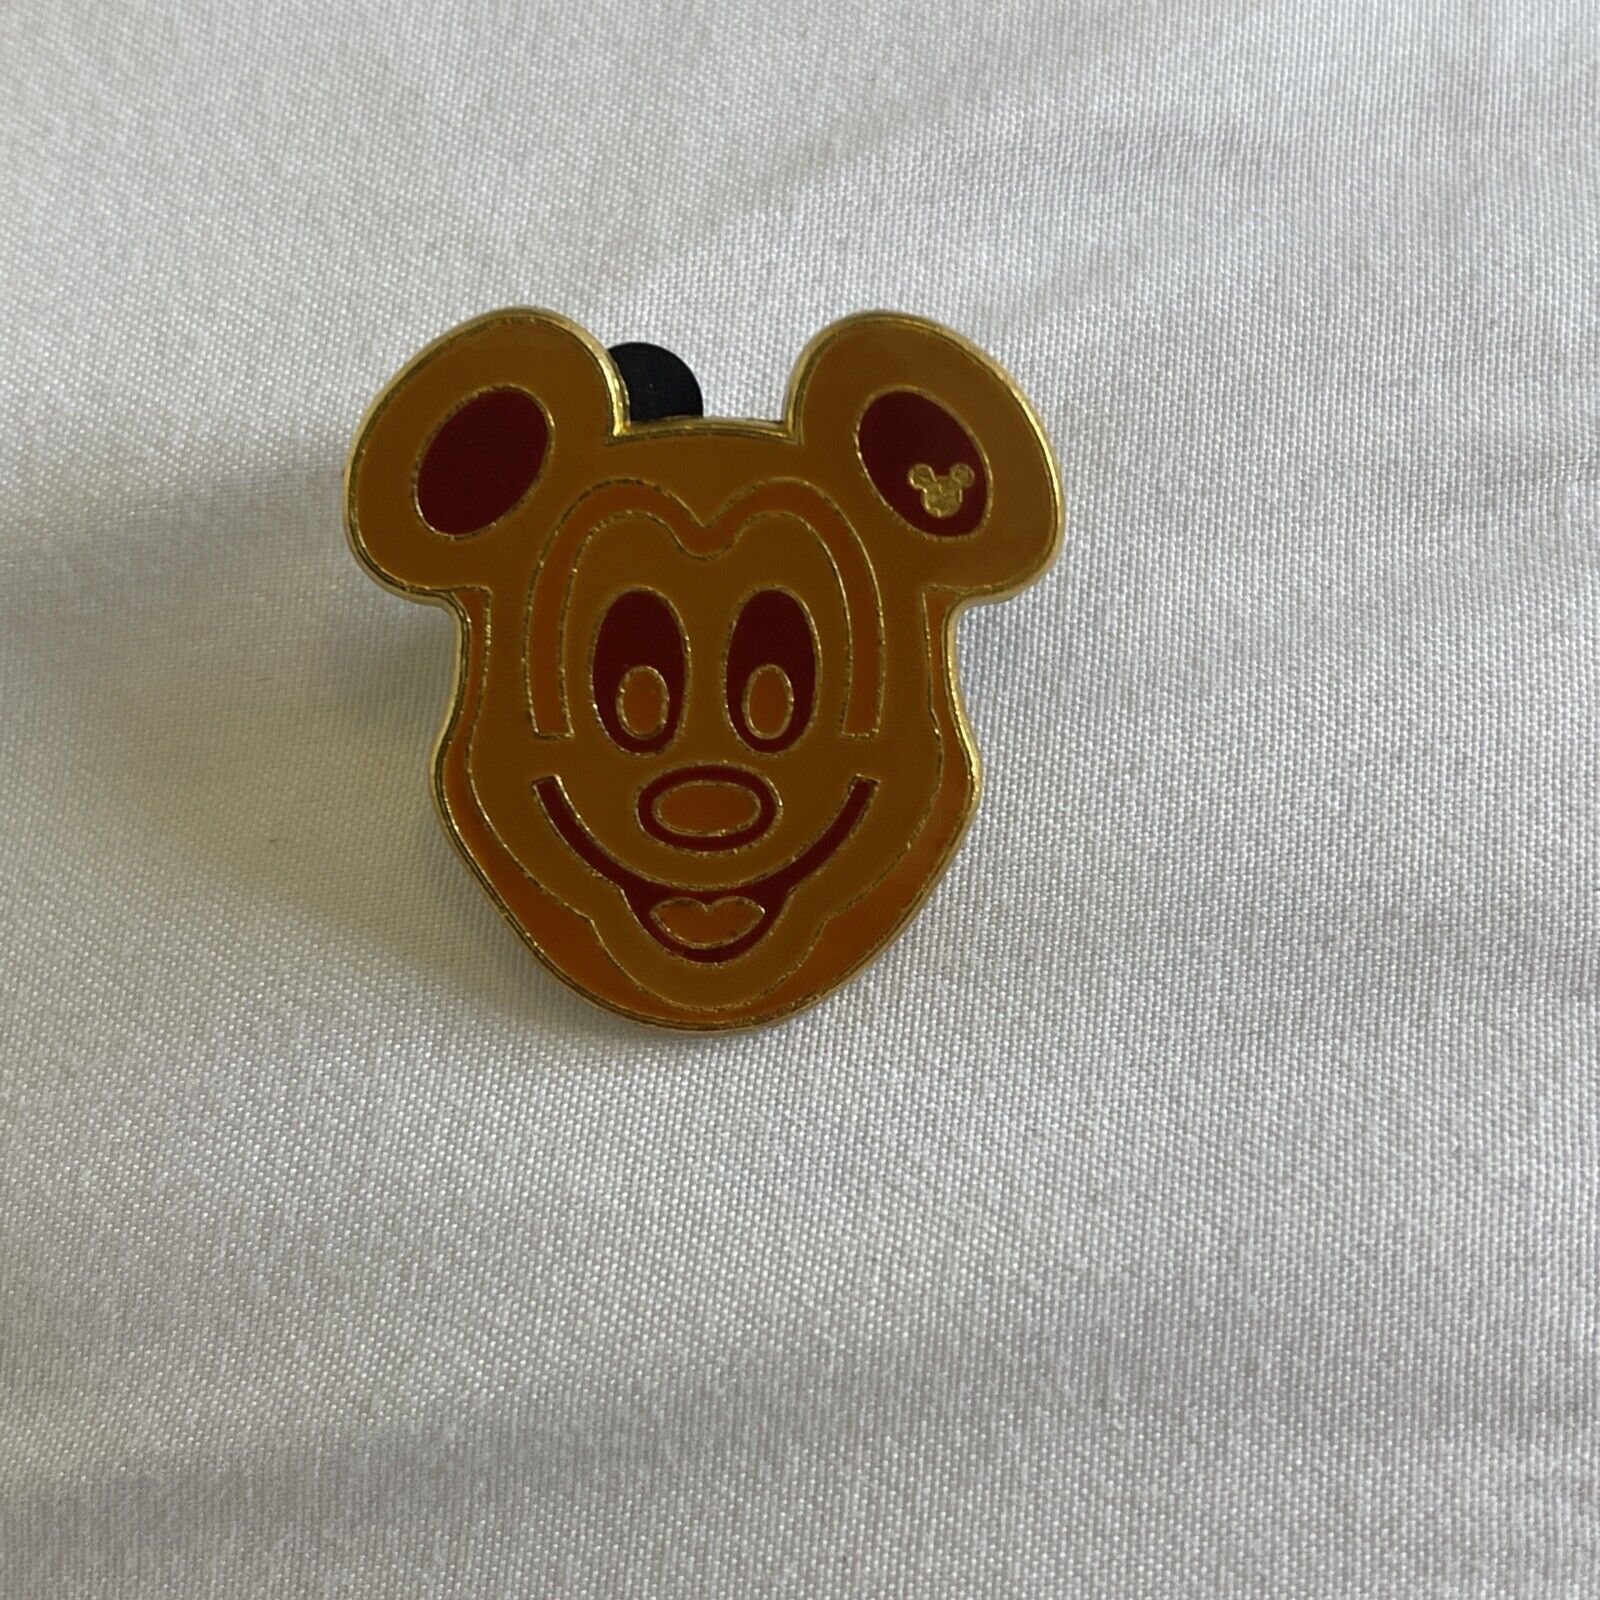 HKDL Hong Kong Trading Carnival 2018 Game Food Treats Mickey Disney Pin (A0)